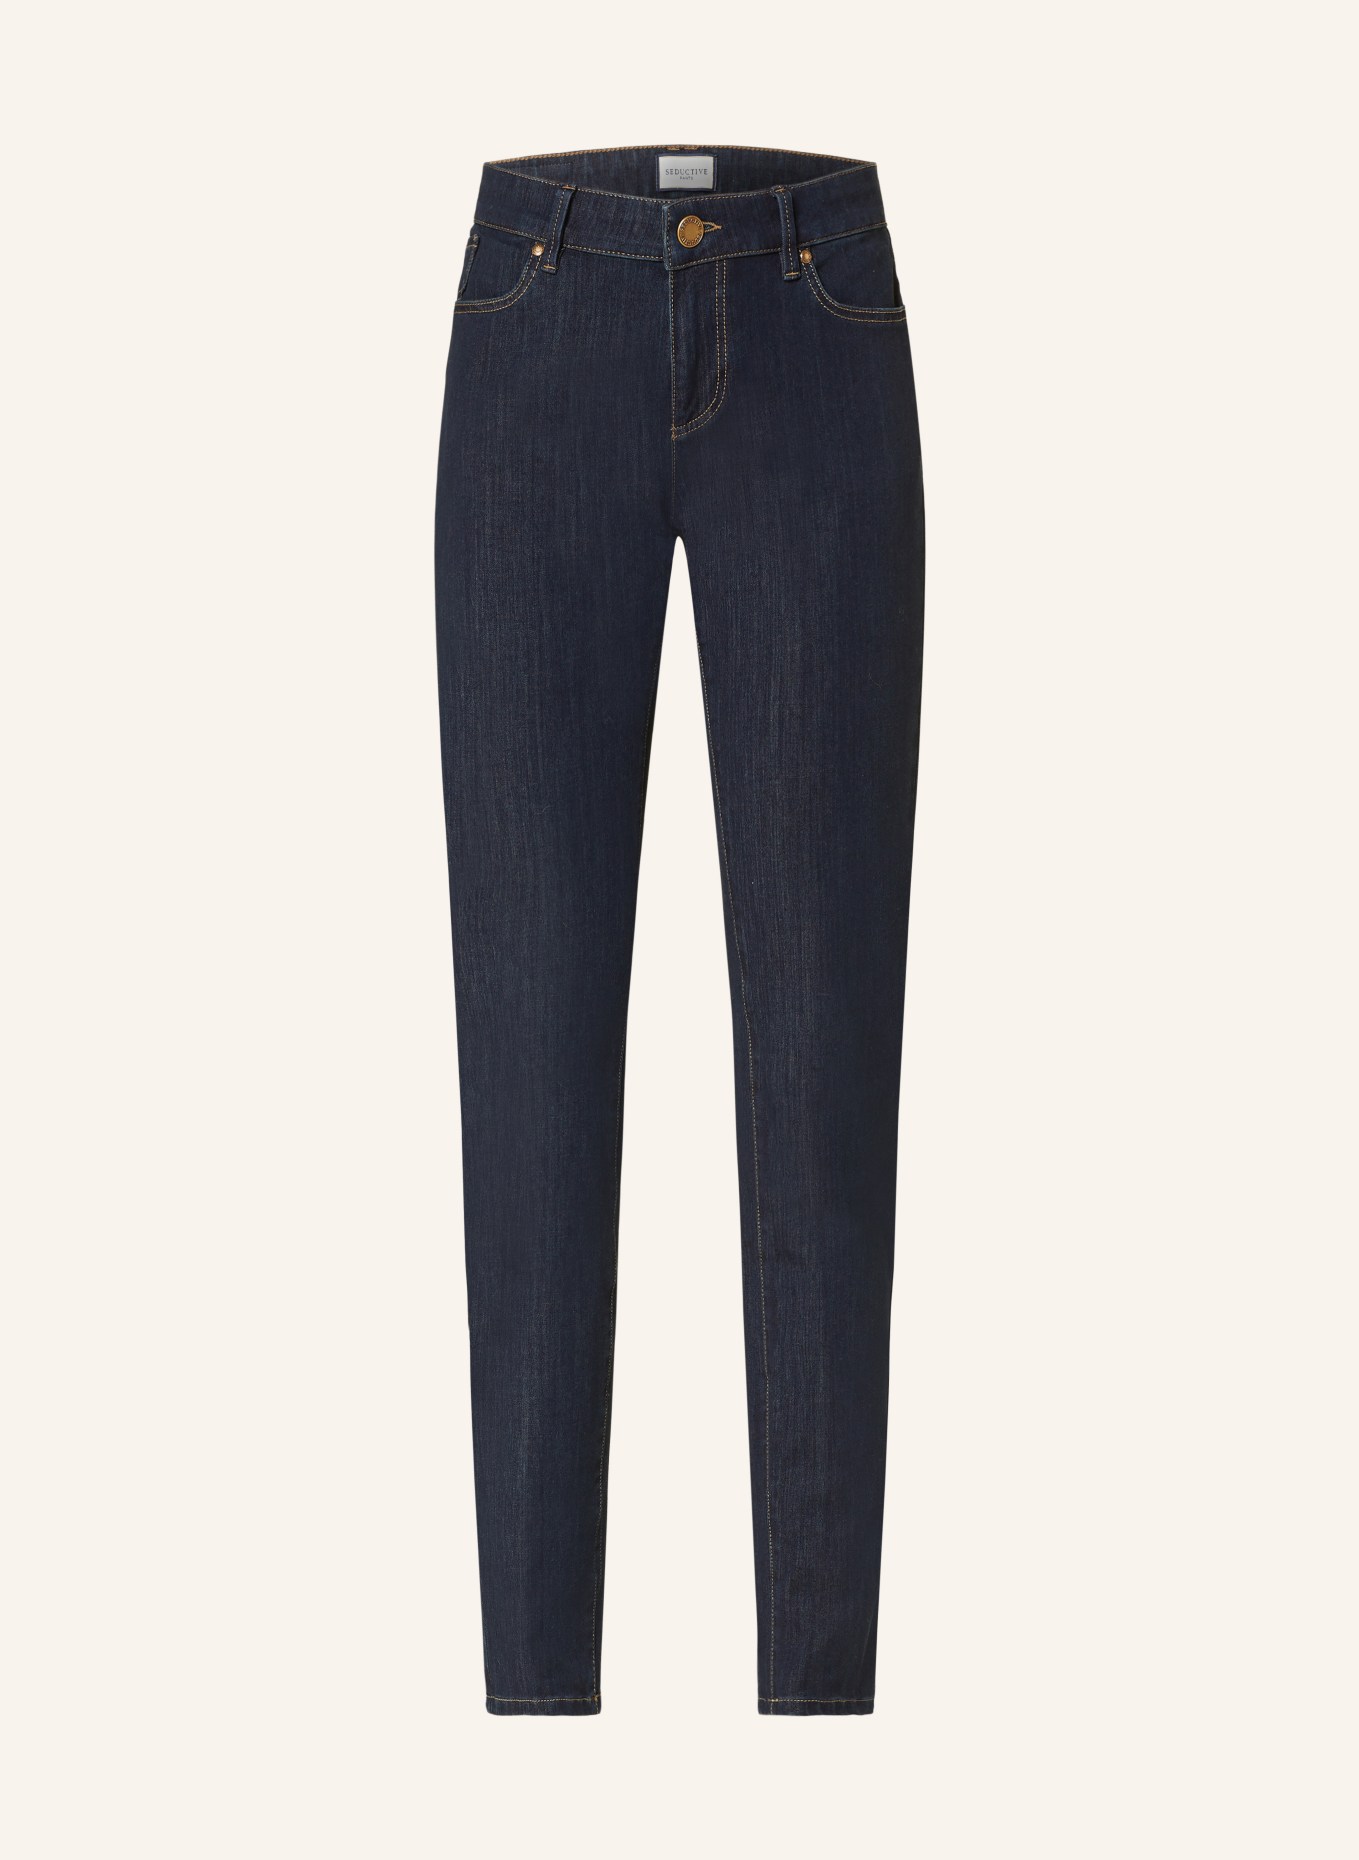 SEDUCTIVE Jeans CLAIRE, Farbe: 890 MARINE (Bild 1)